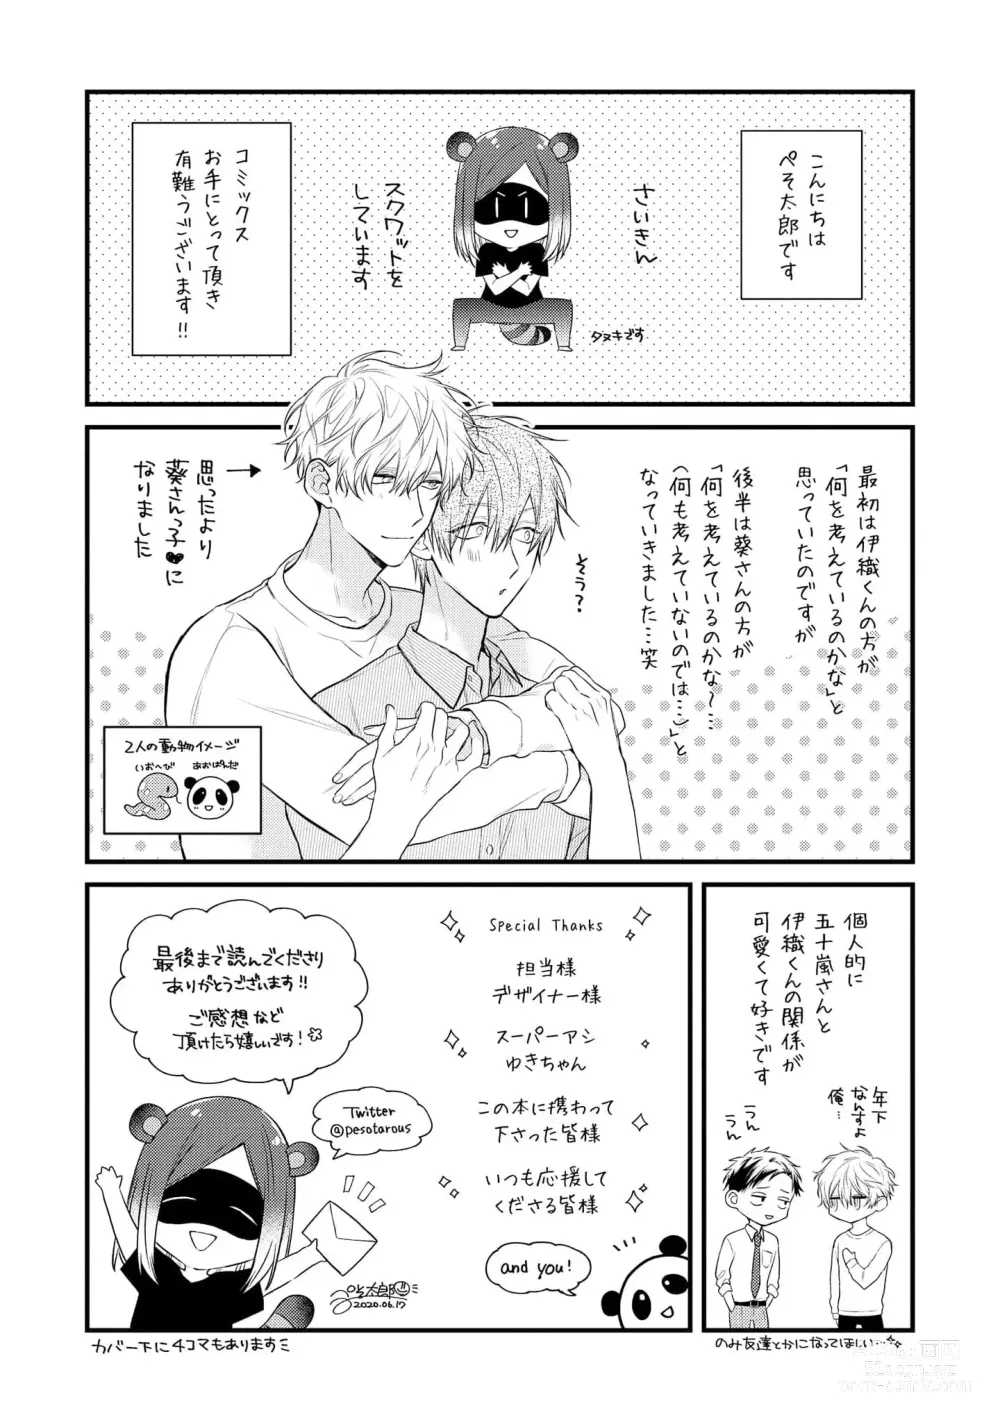 Page 195 of manga Ecchi wa shuu 7 Kibou Desu!